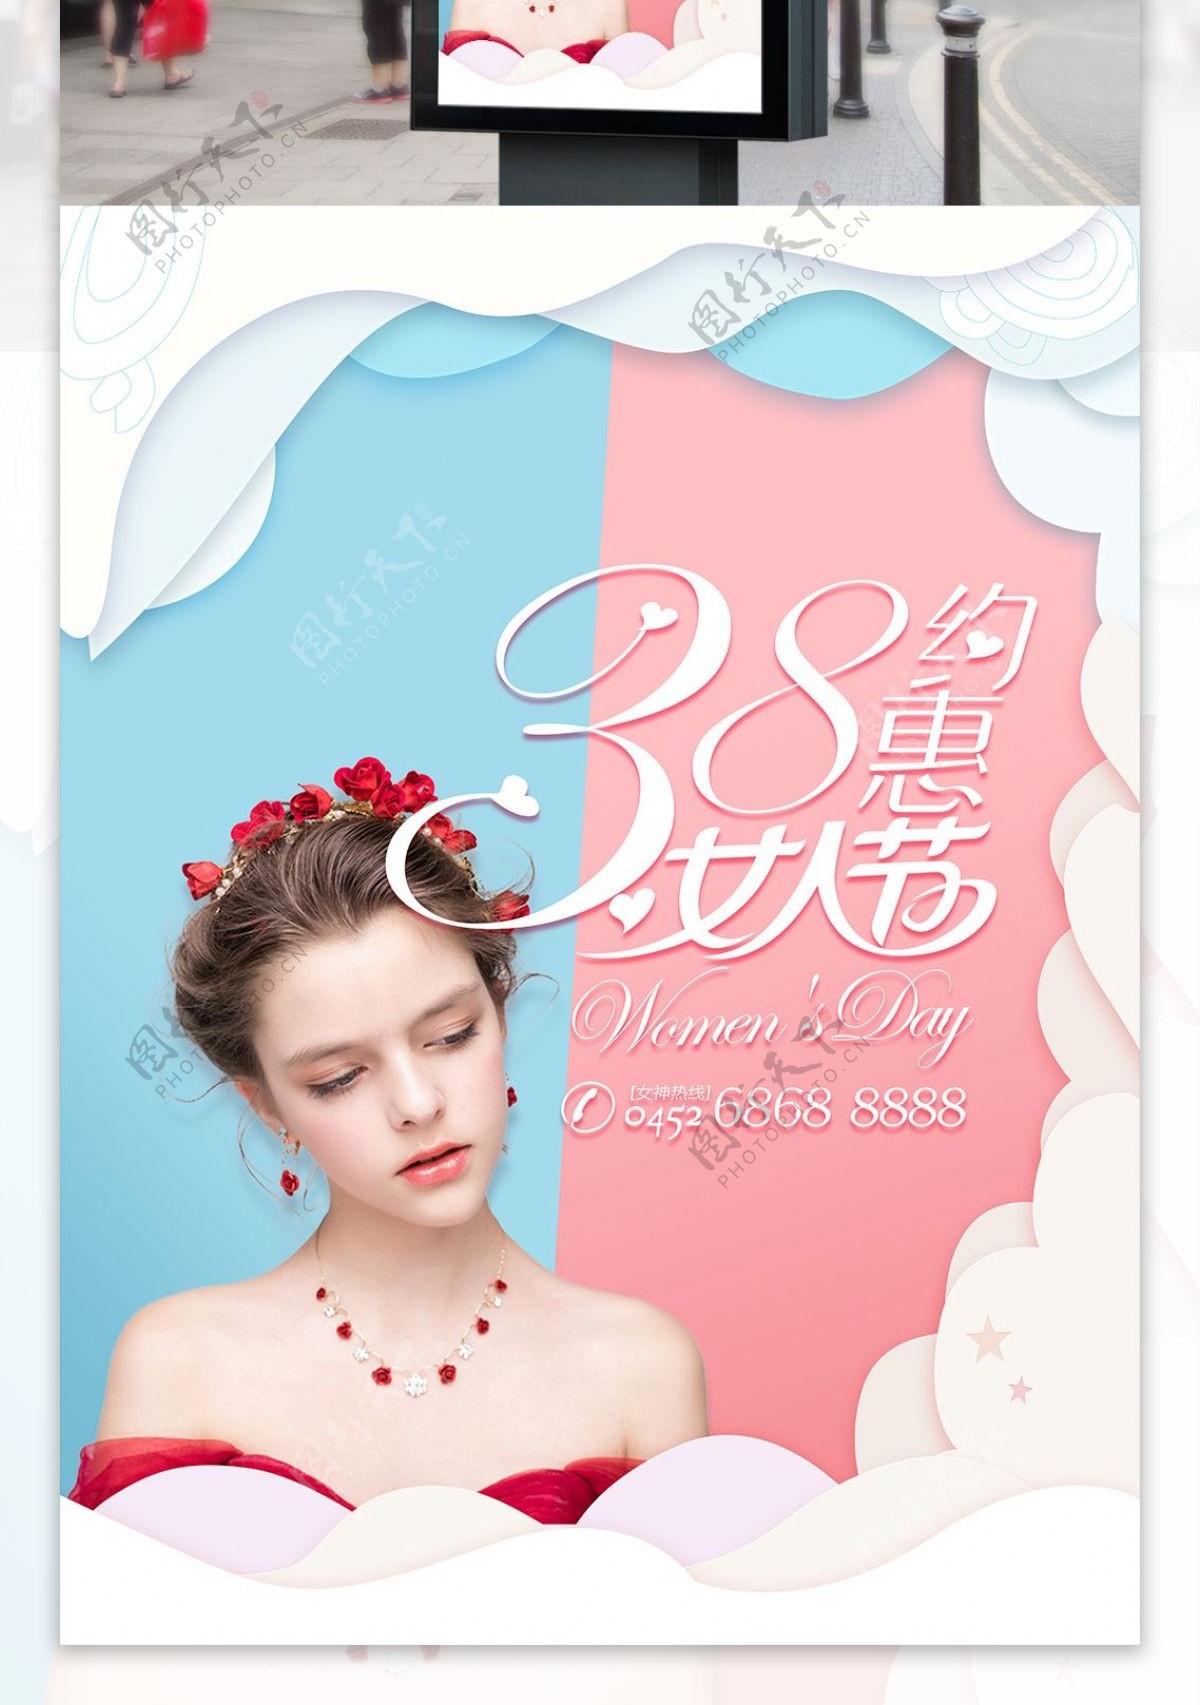 清新38约惠女人节节日宣传海报